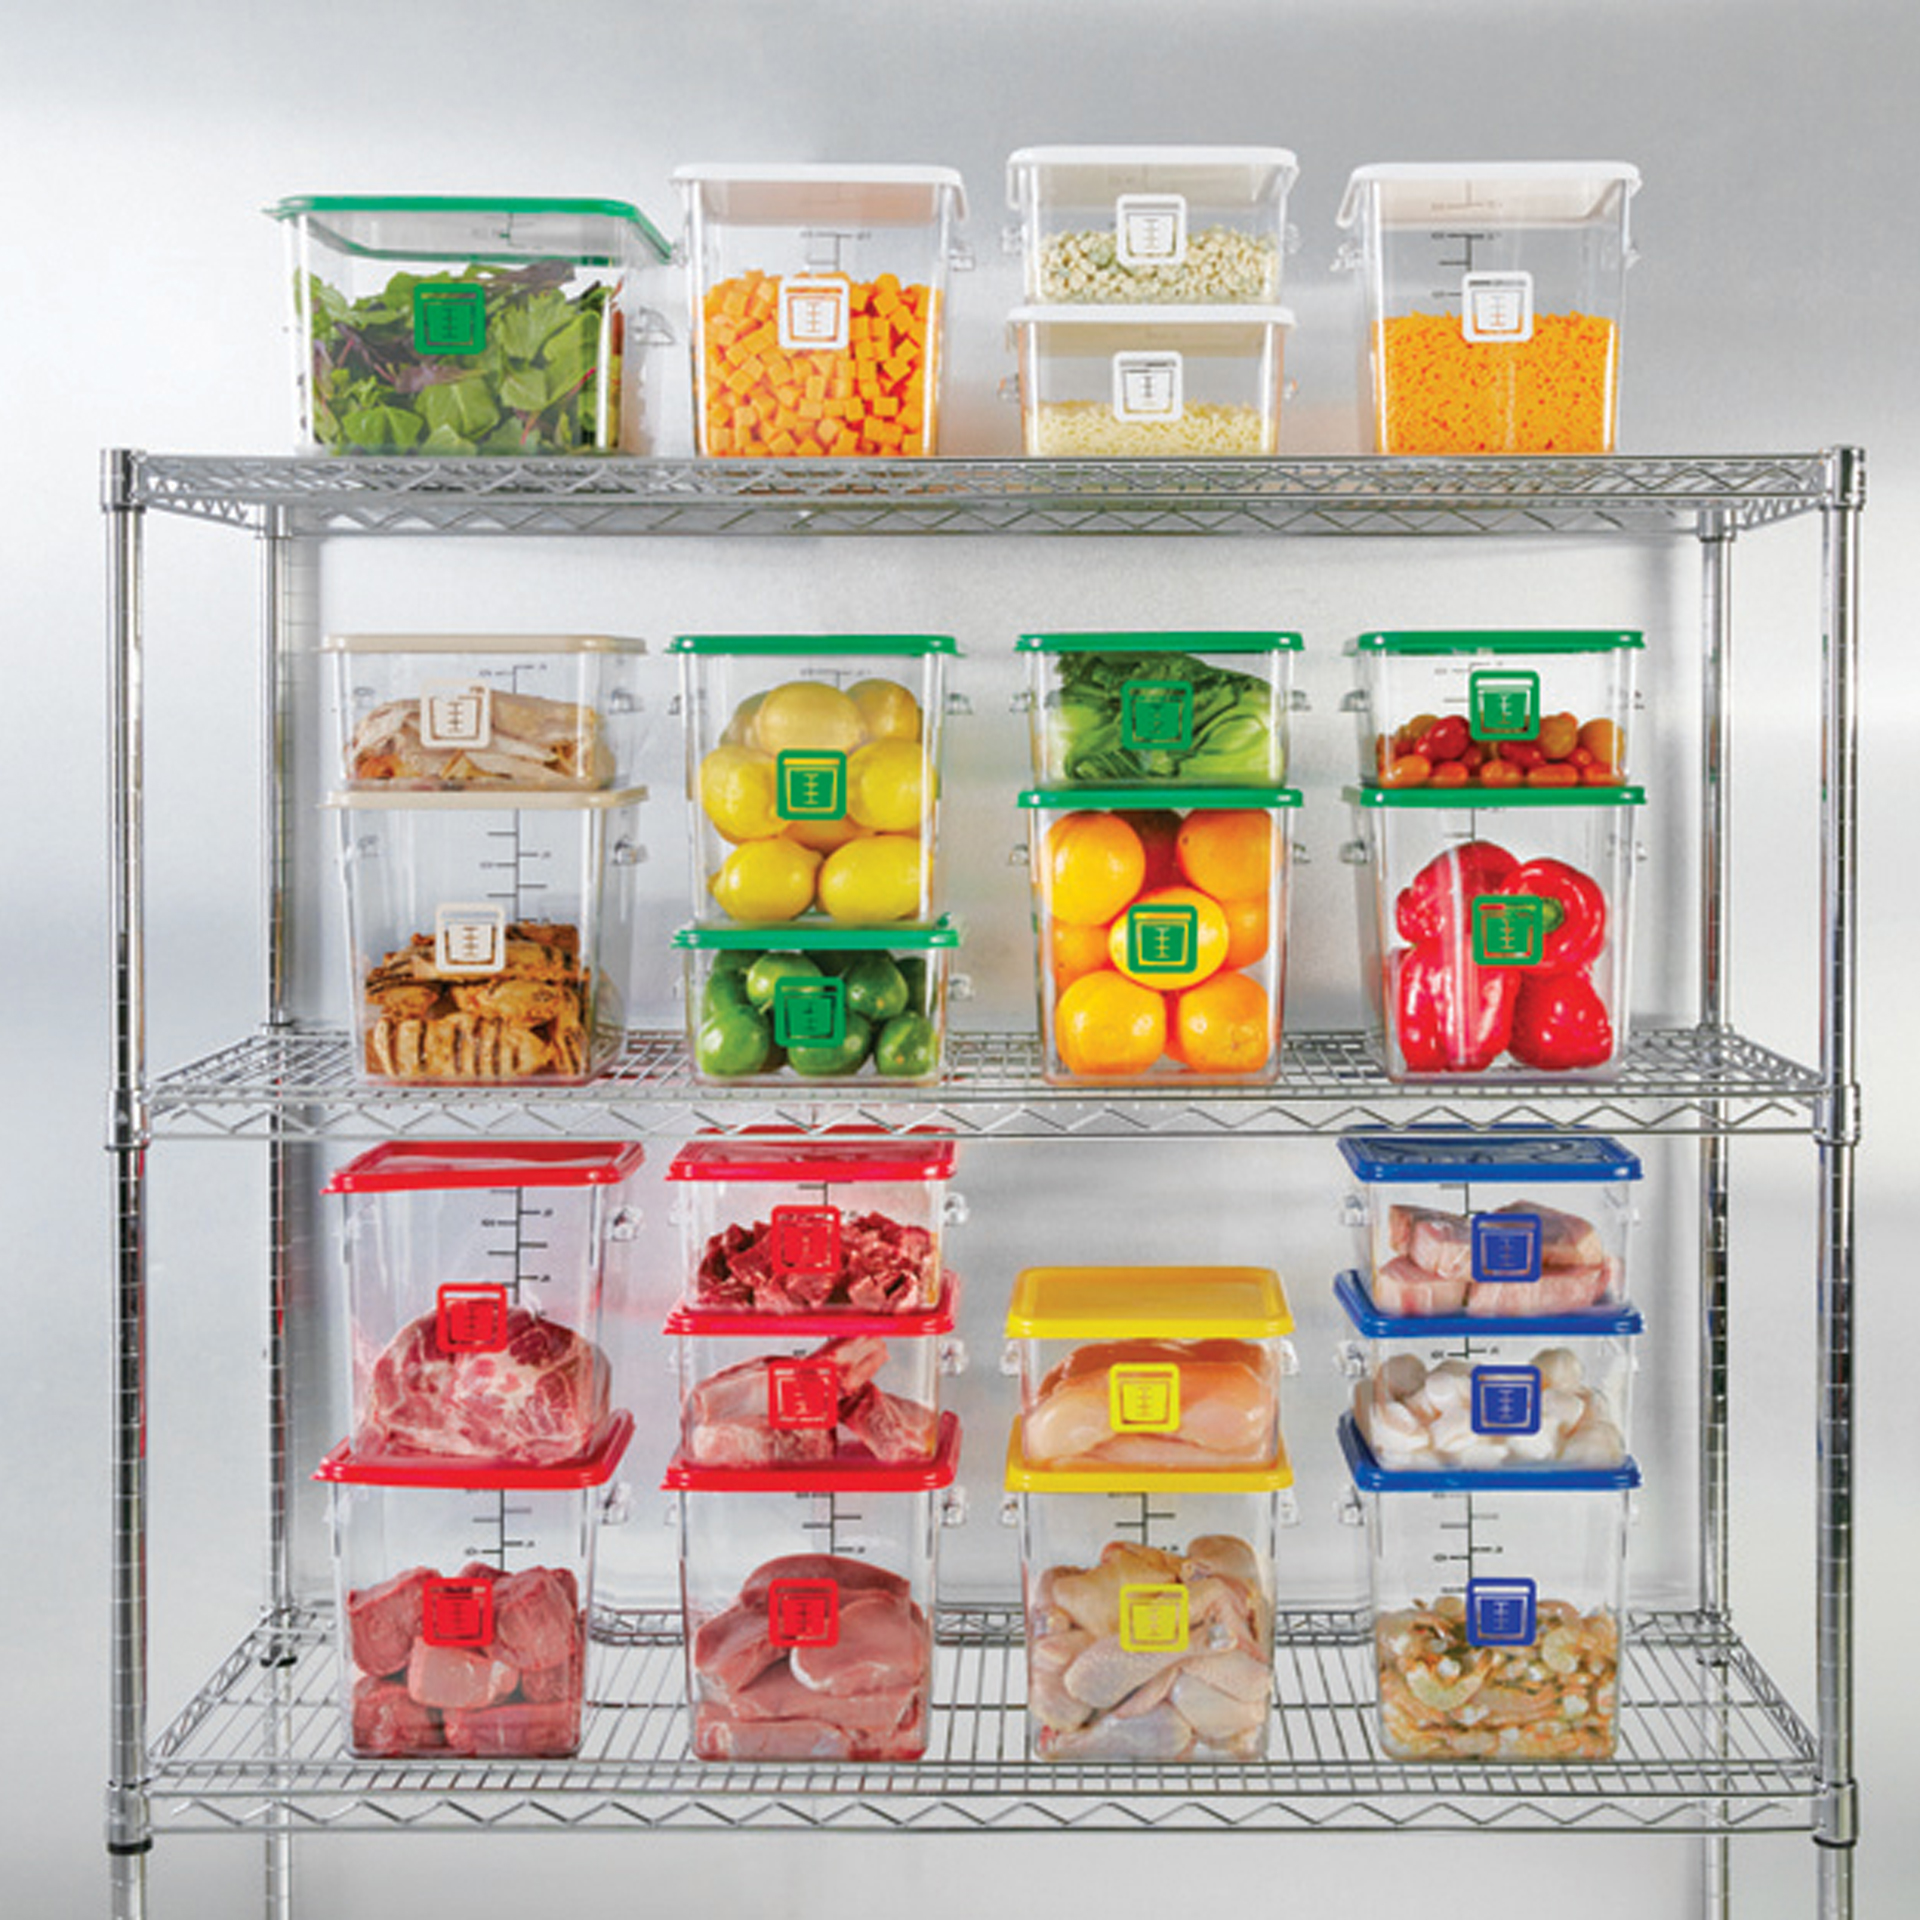 กล่องเก็บวัตถุดิบอาหารสี่เหลี่ยม Color-Coded Square Container Clear ขนาด 8 qt สีม่วง